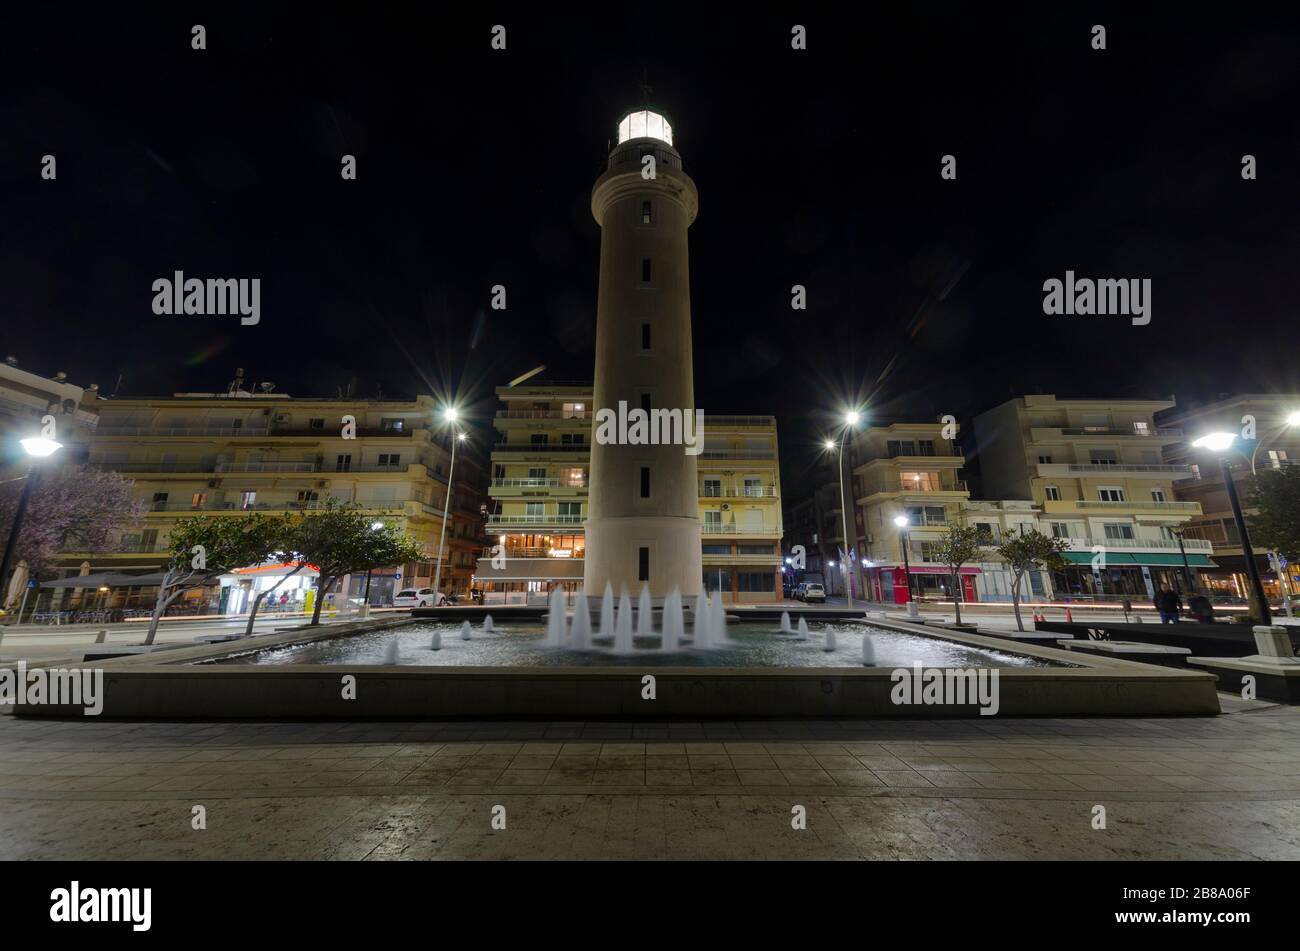 Lunga esposizione notturna del famoso faro sul lungomare nella città costiera settentrionale di Alexandroupoli Evros Grecia Foto Stock